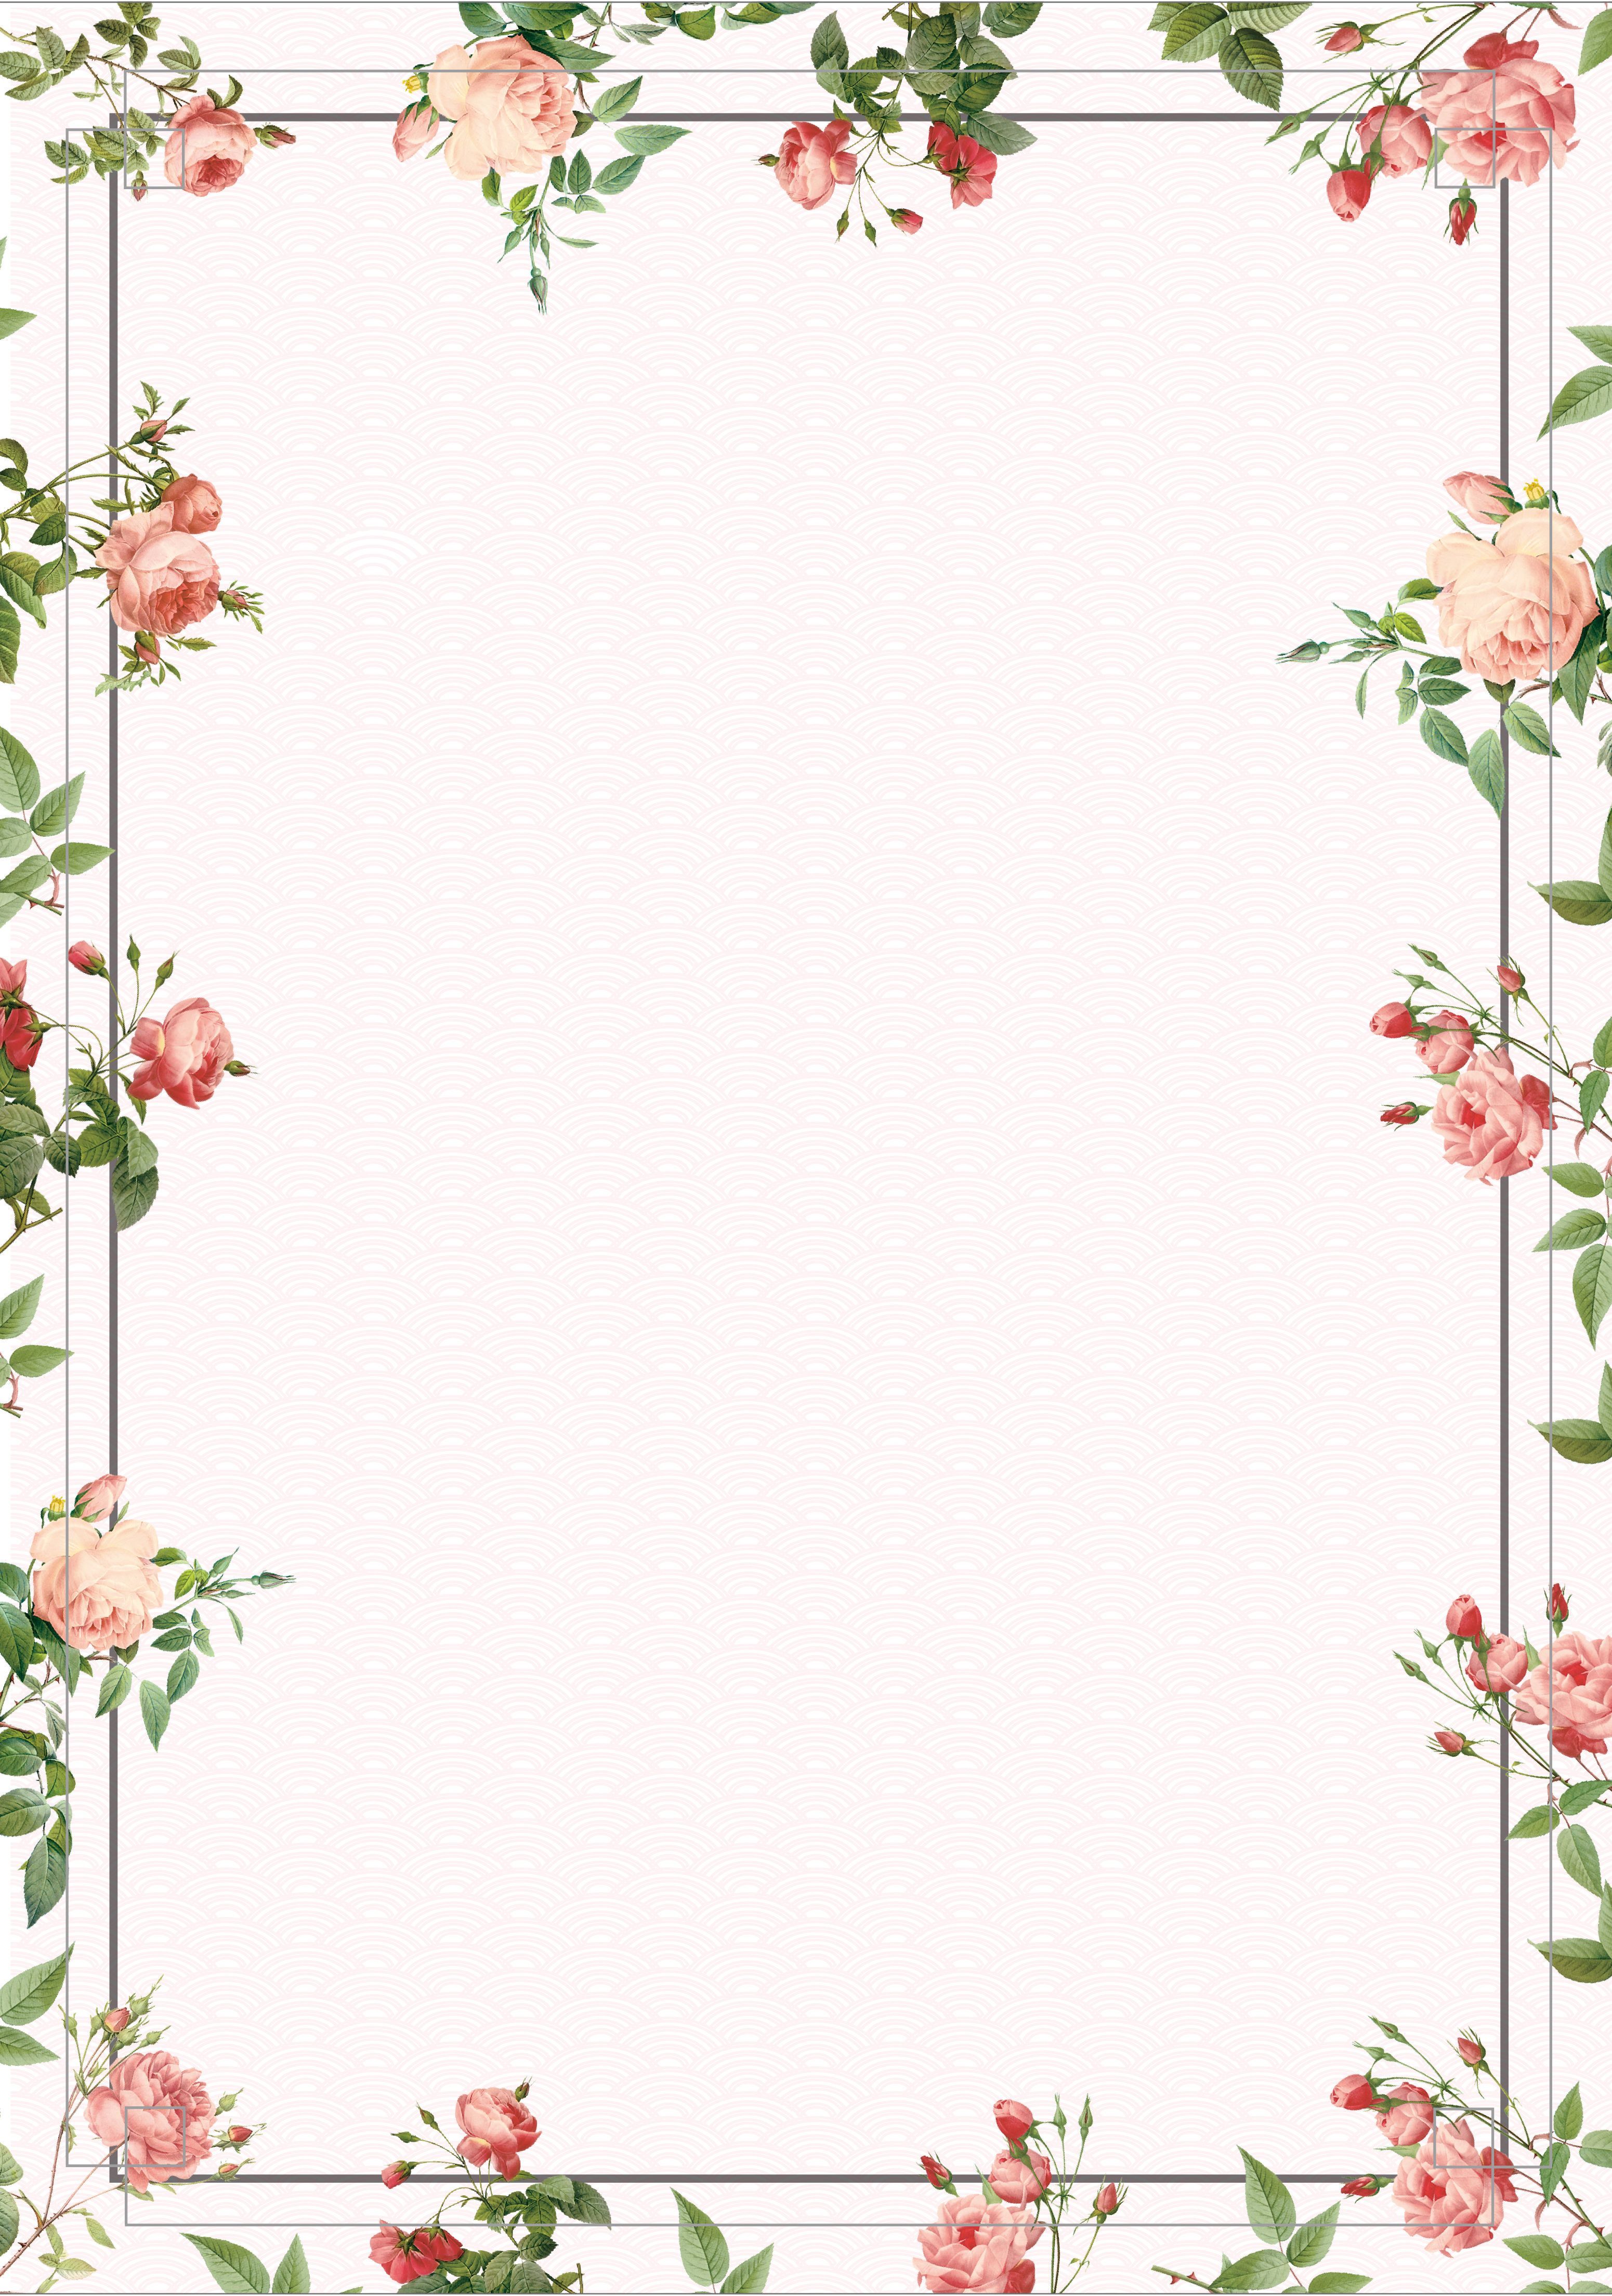 Aesthetic Flowers Border Wallpaper